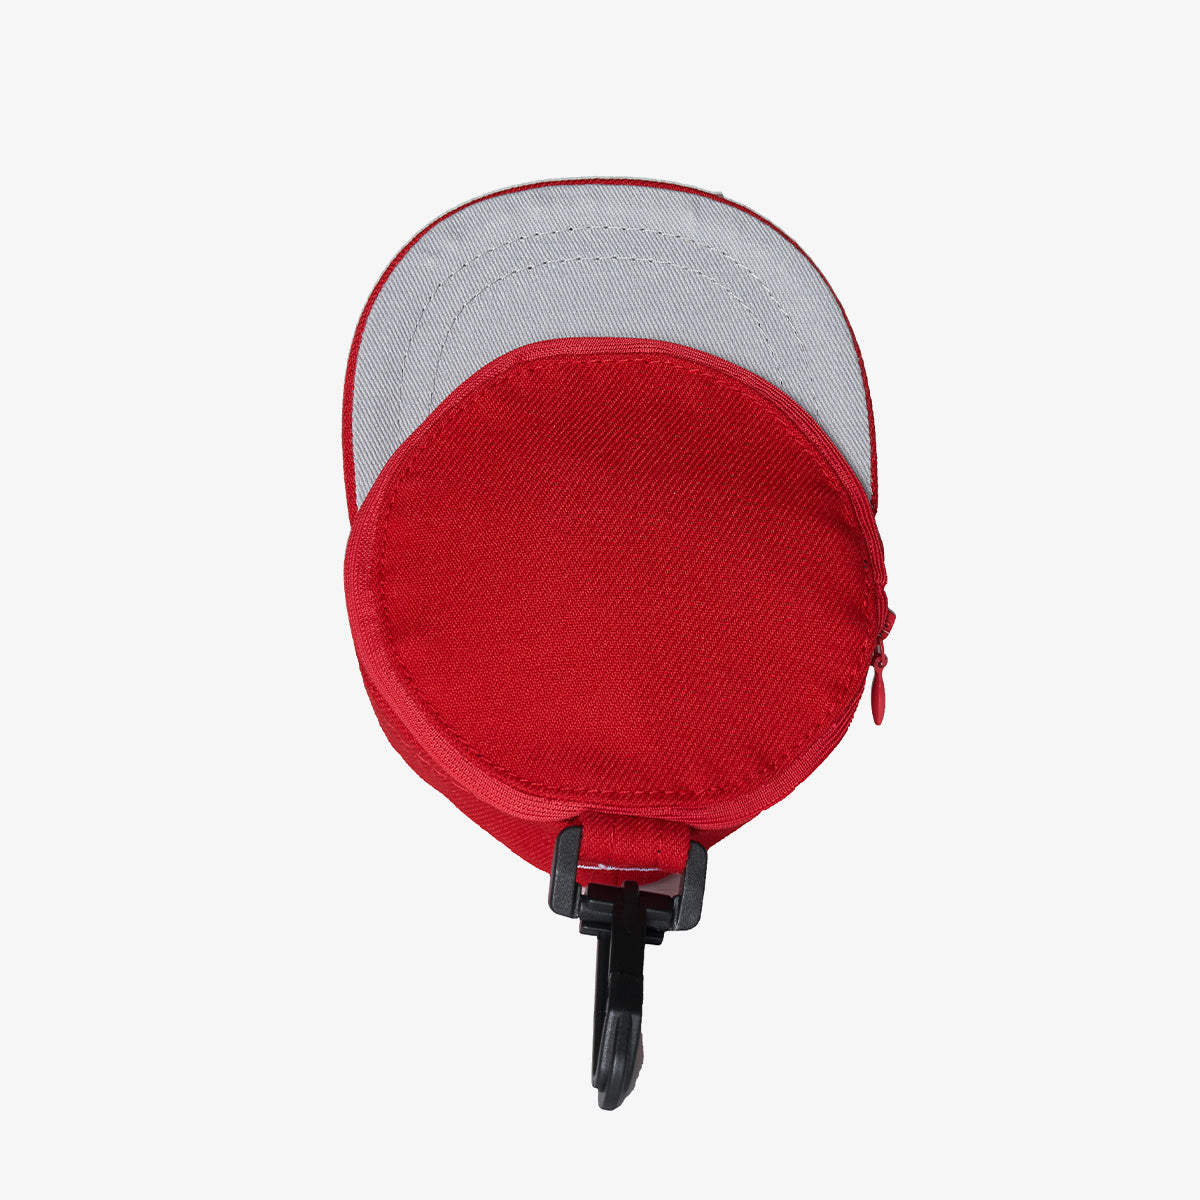 NEWERA MLB 紅雀隊帽袋鑰匙扣(紅色)